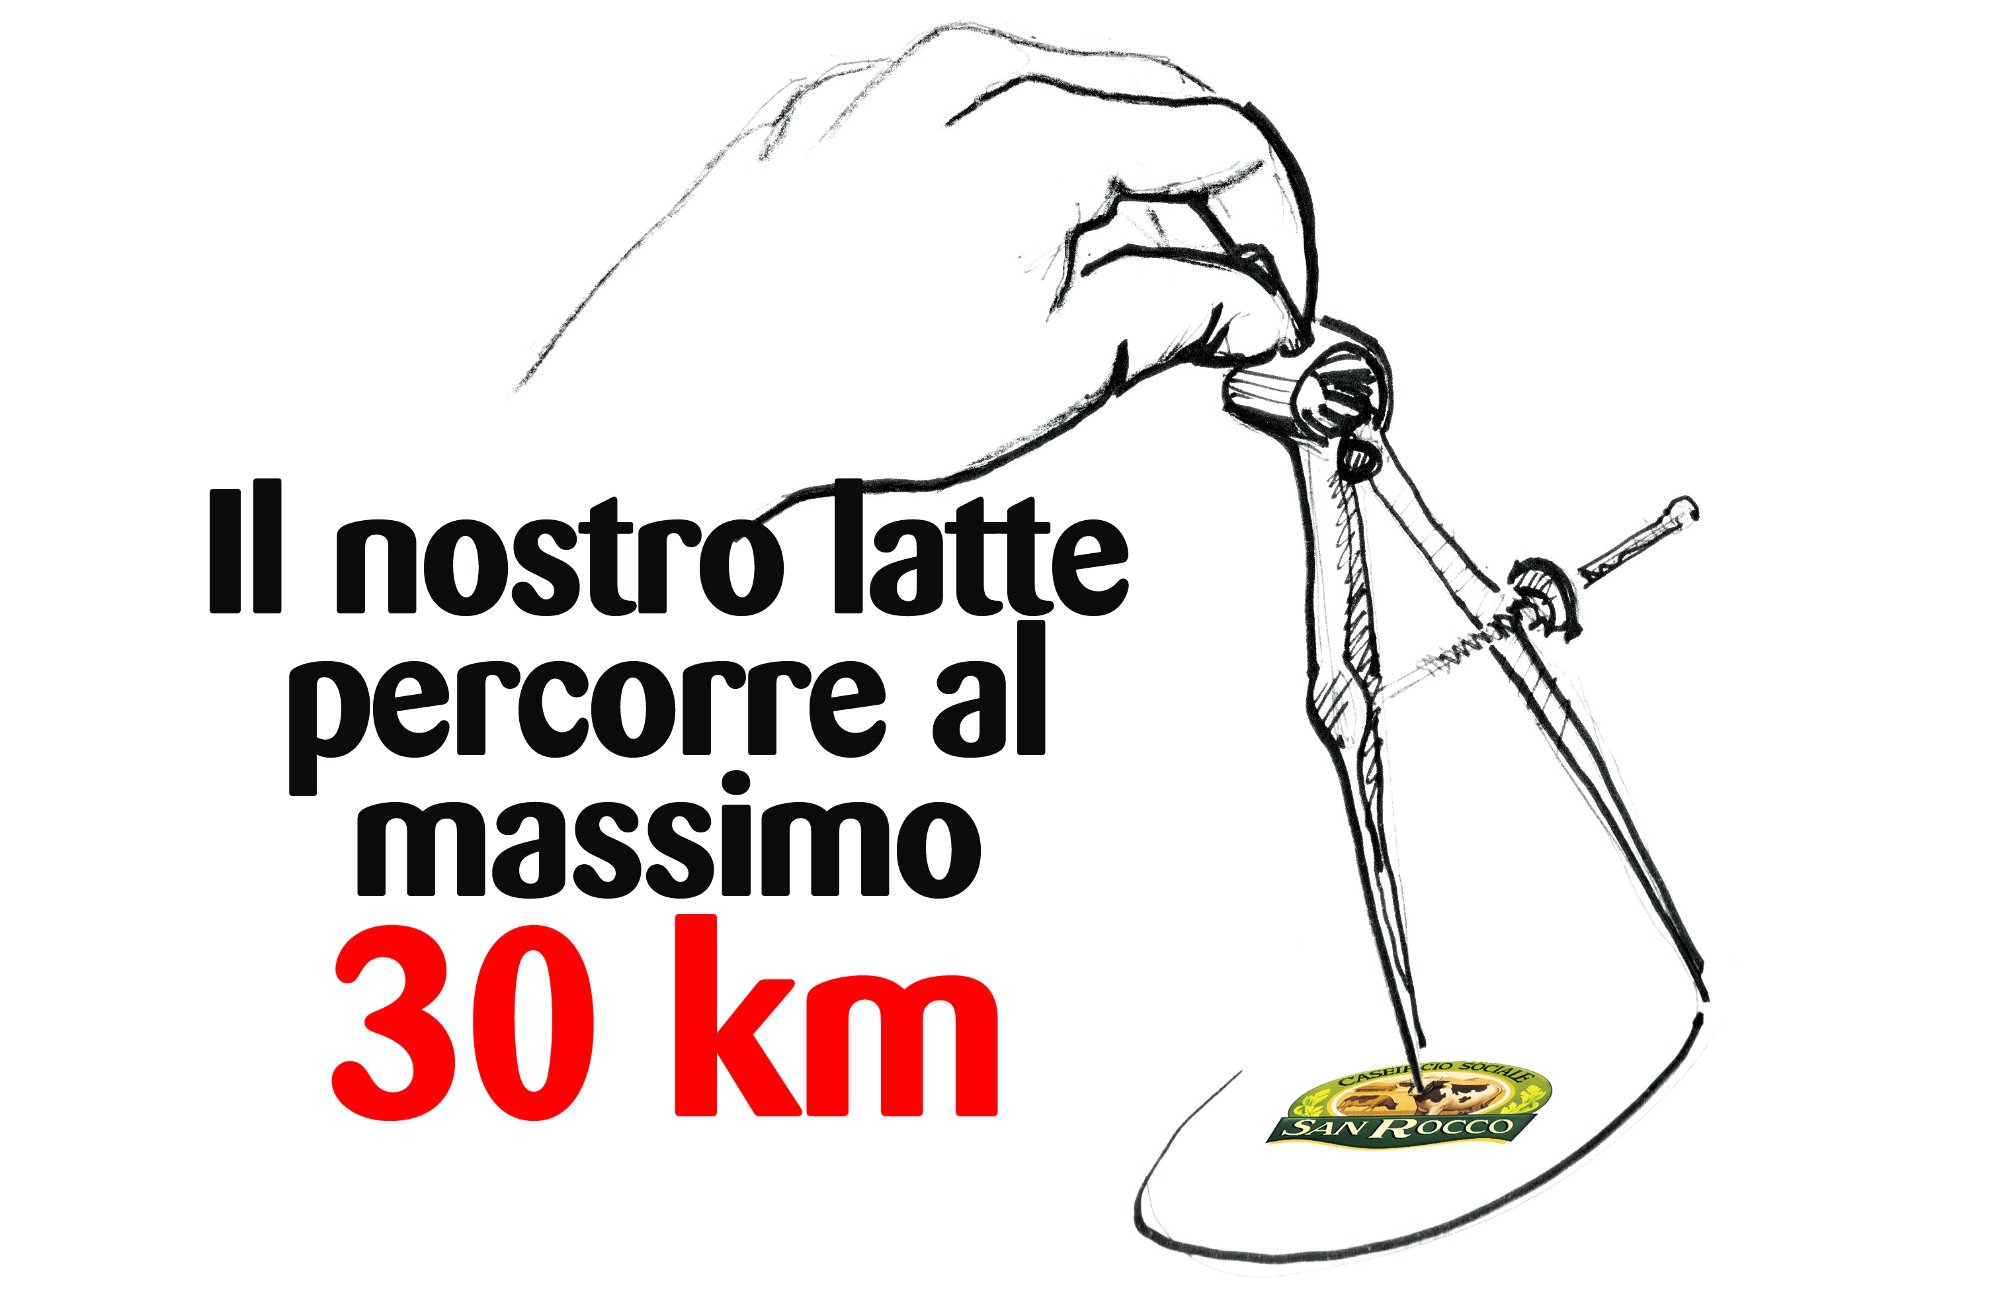 IL NOSTRO LATTE PERCORRE AL MASSIMO 30 KM